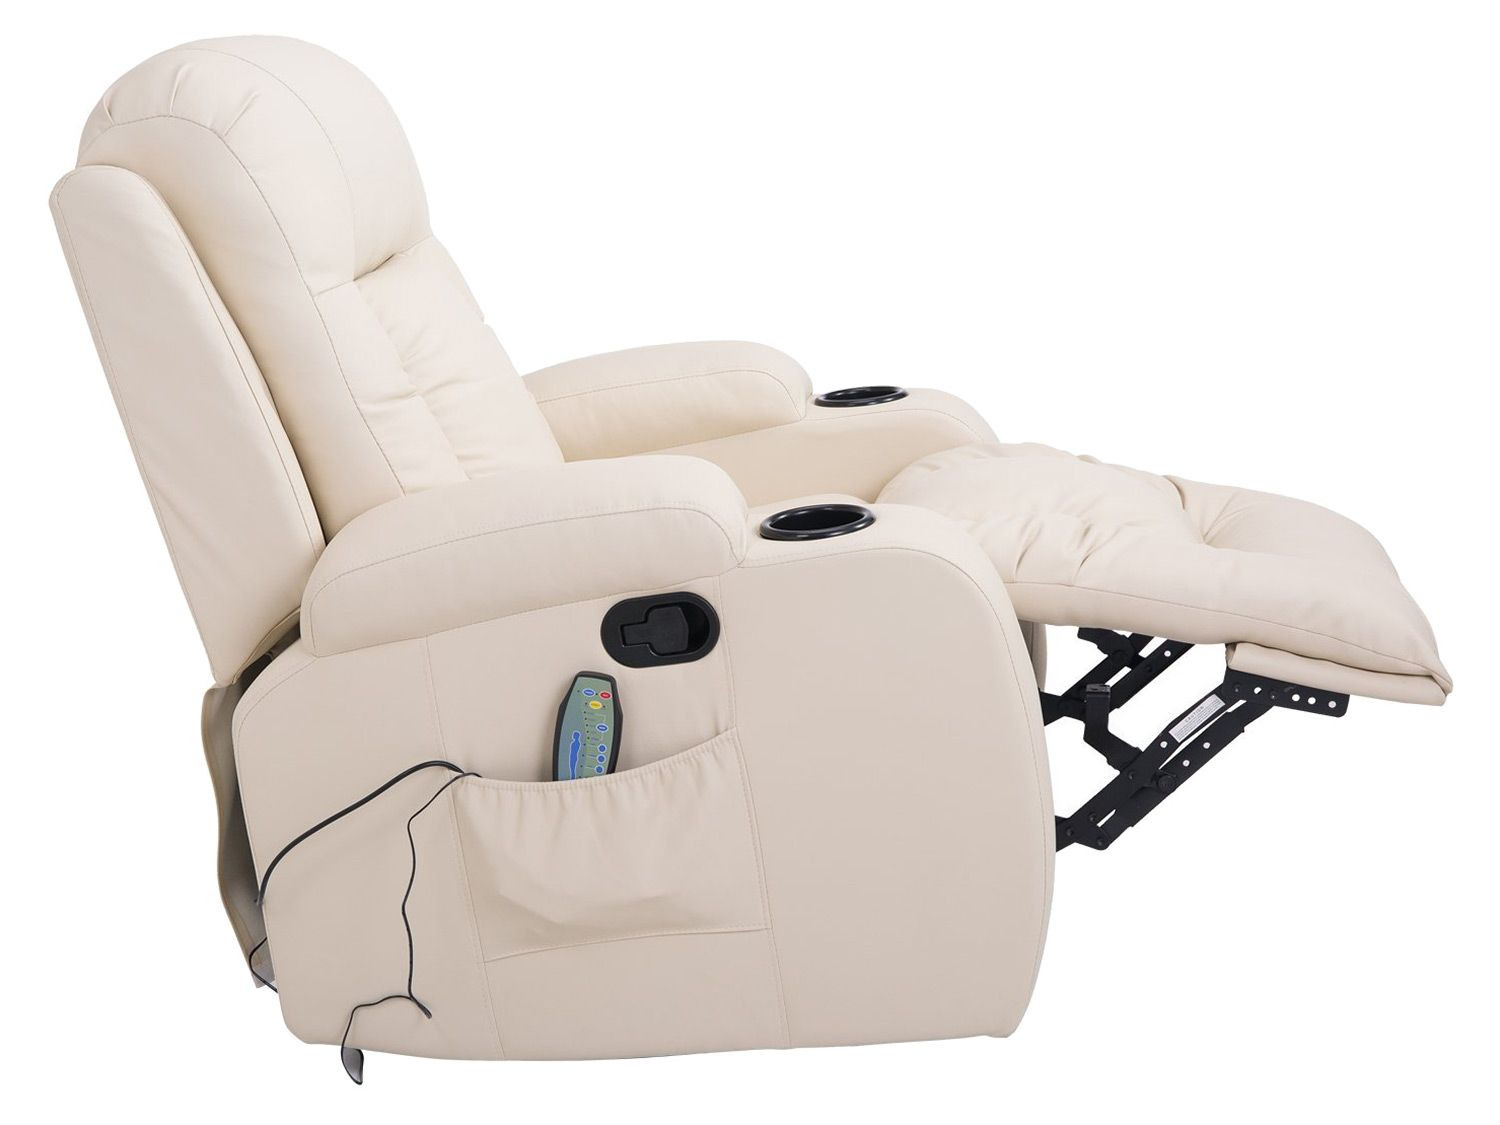 HOMCOM TV Sessel mit Massage und Wärmefunktion - creme